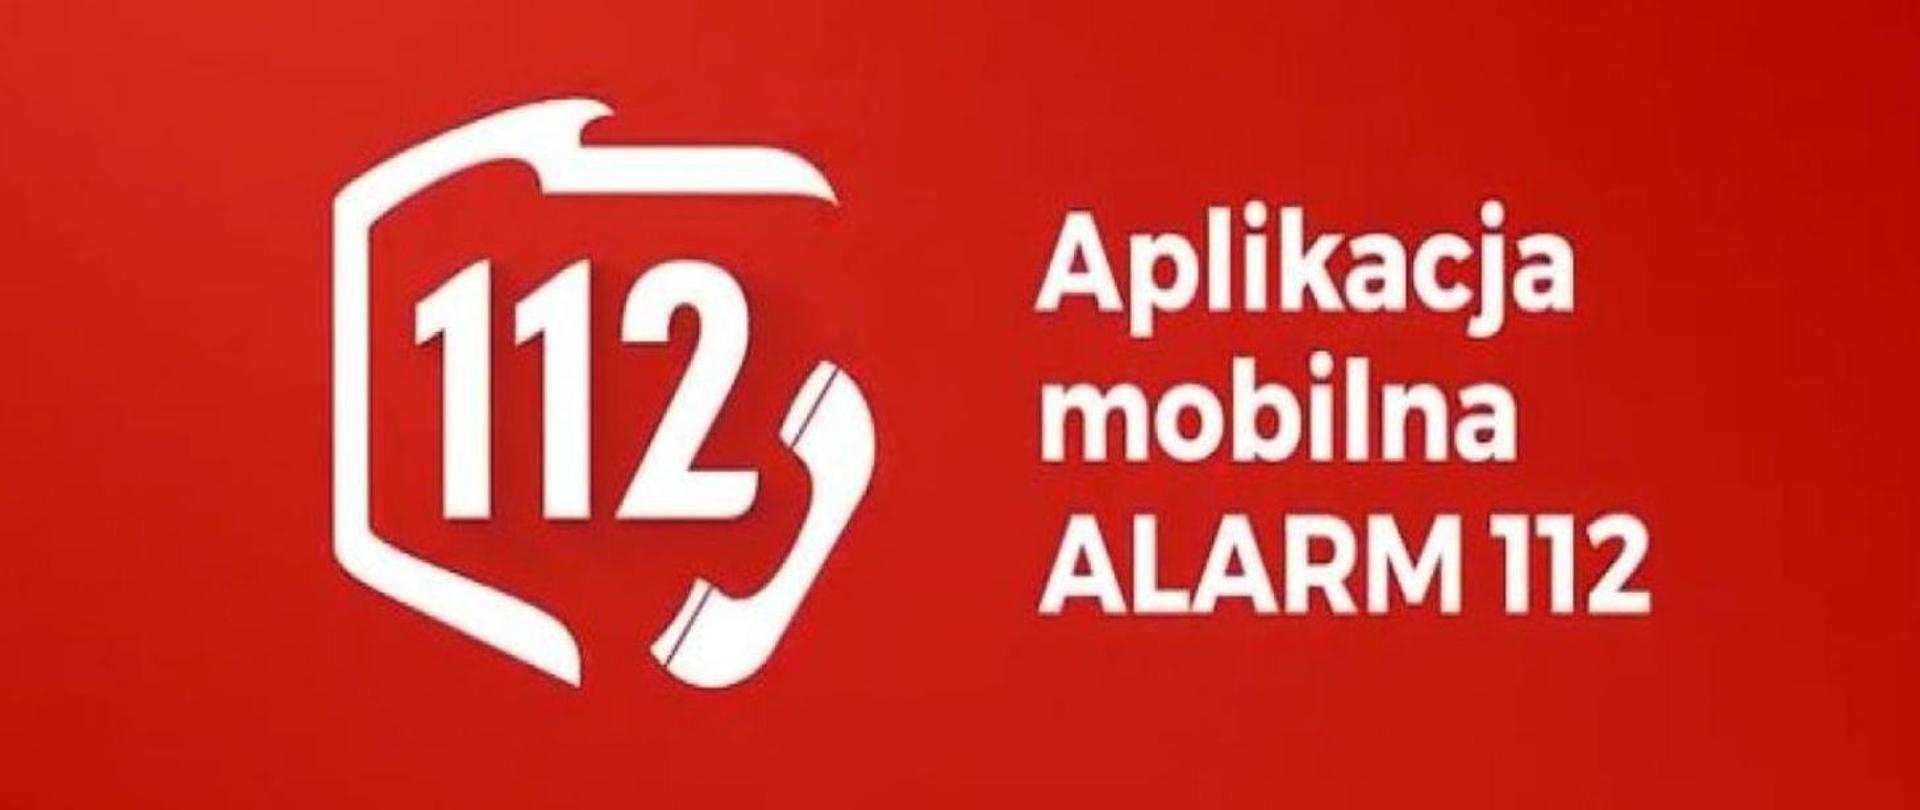 Aplikacja mobilna ALARM 112